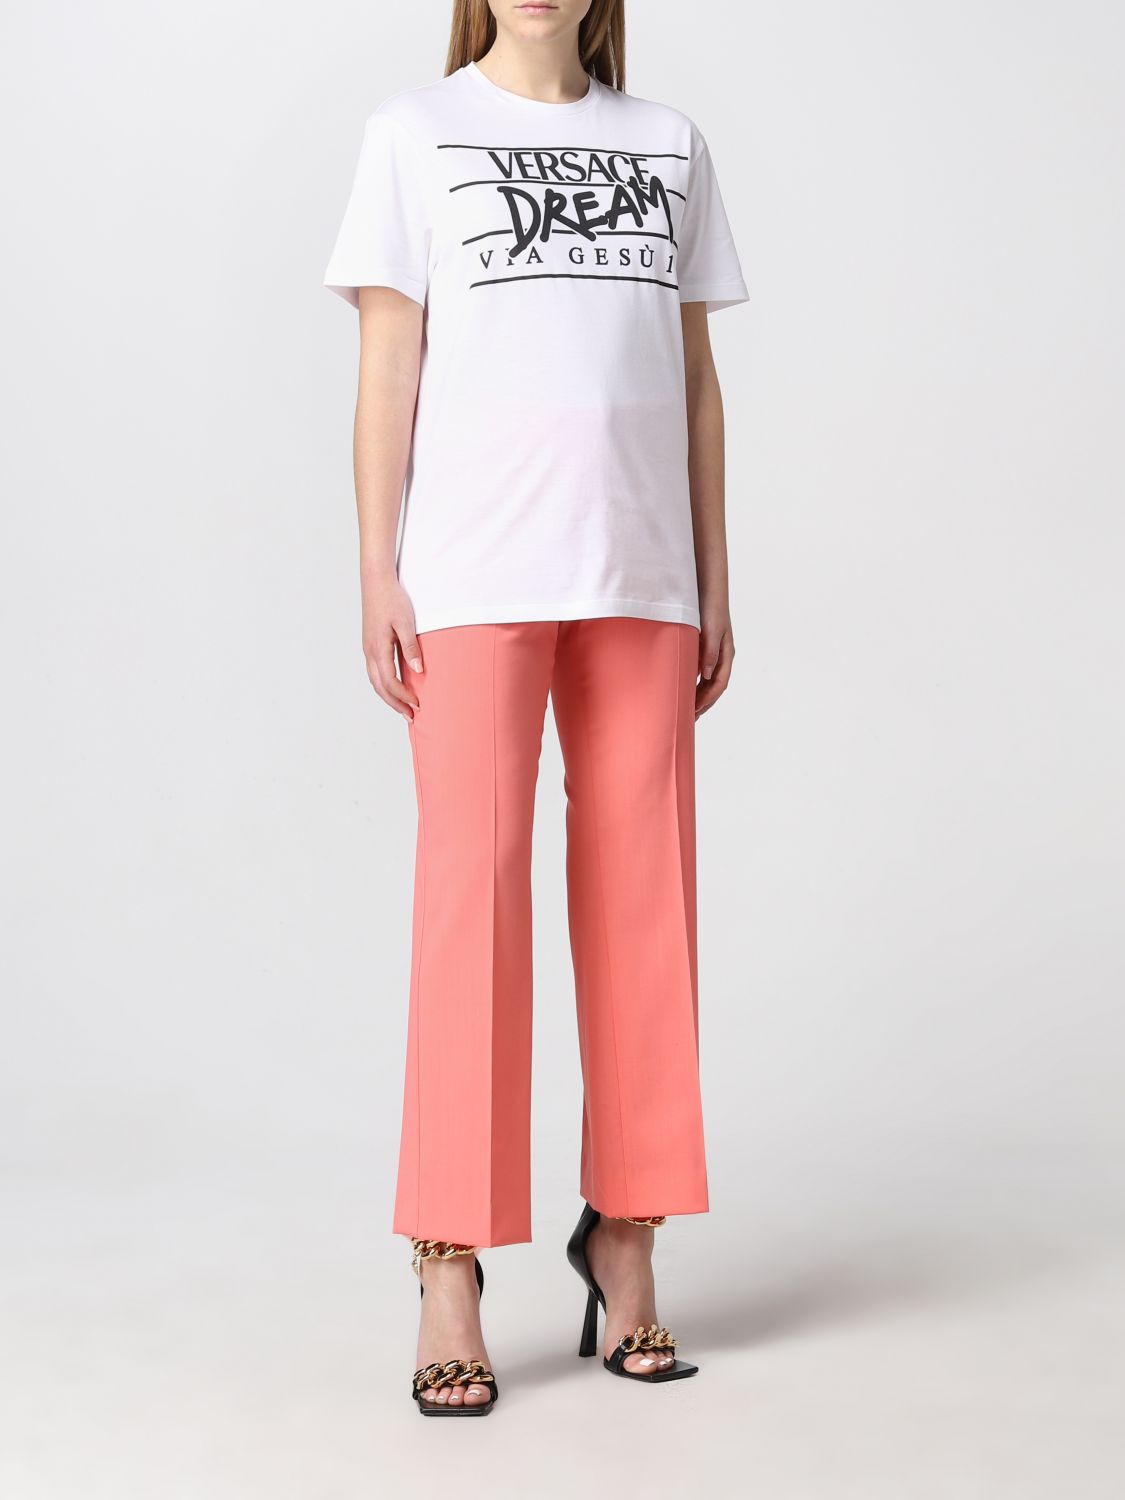 T-shirt Versace: T-shirt damen Versace weiß 2